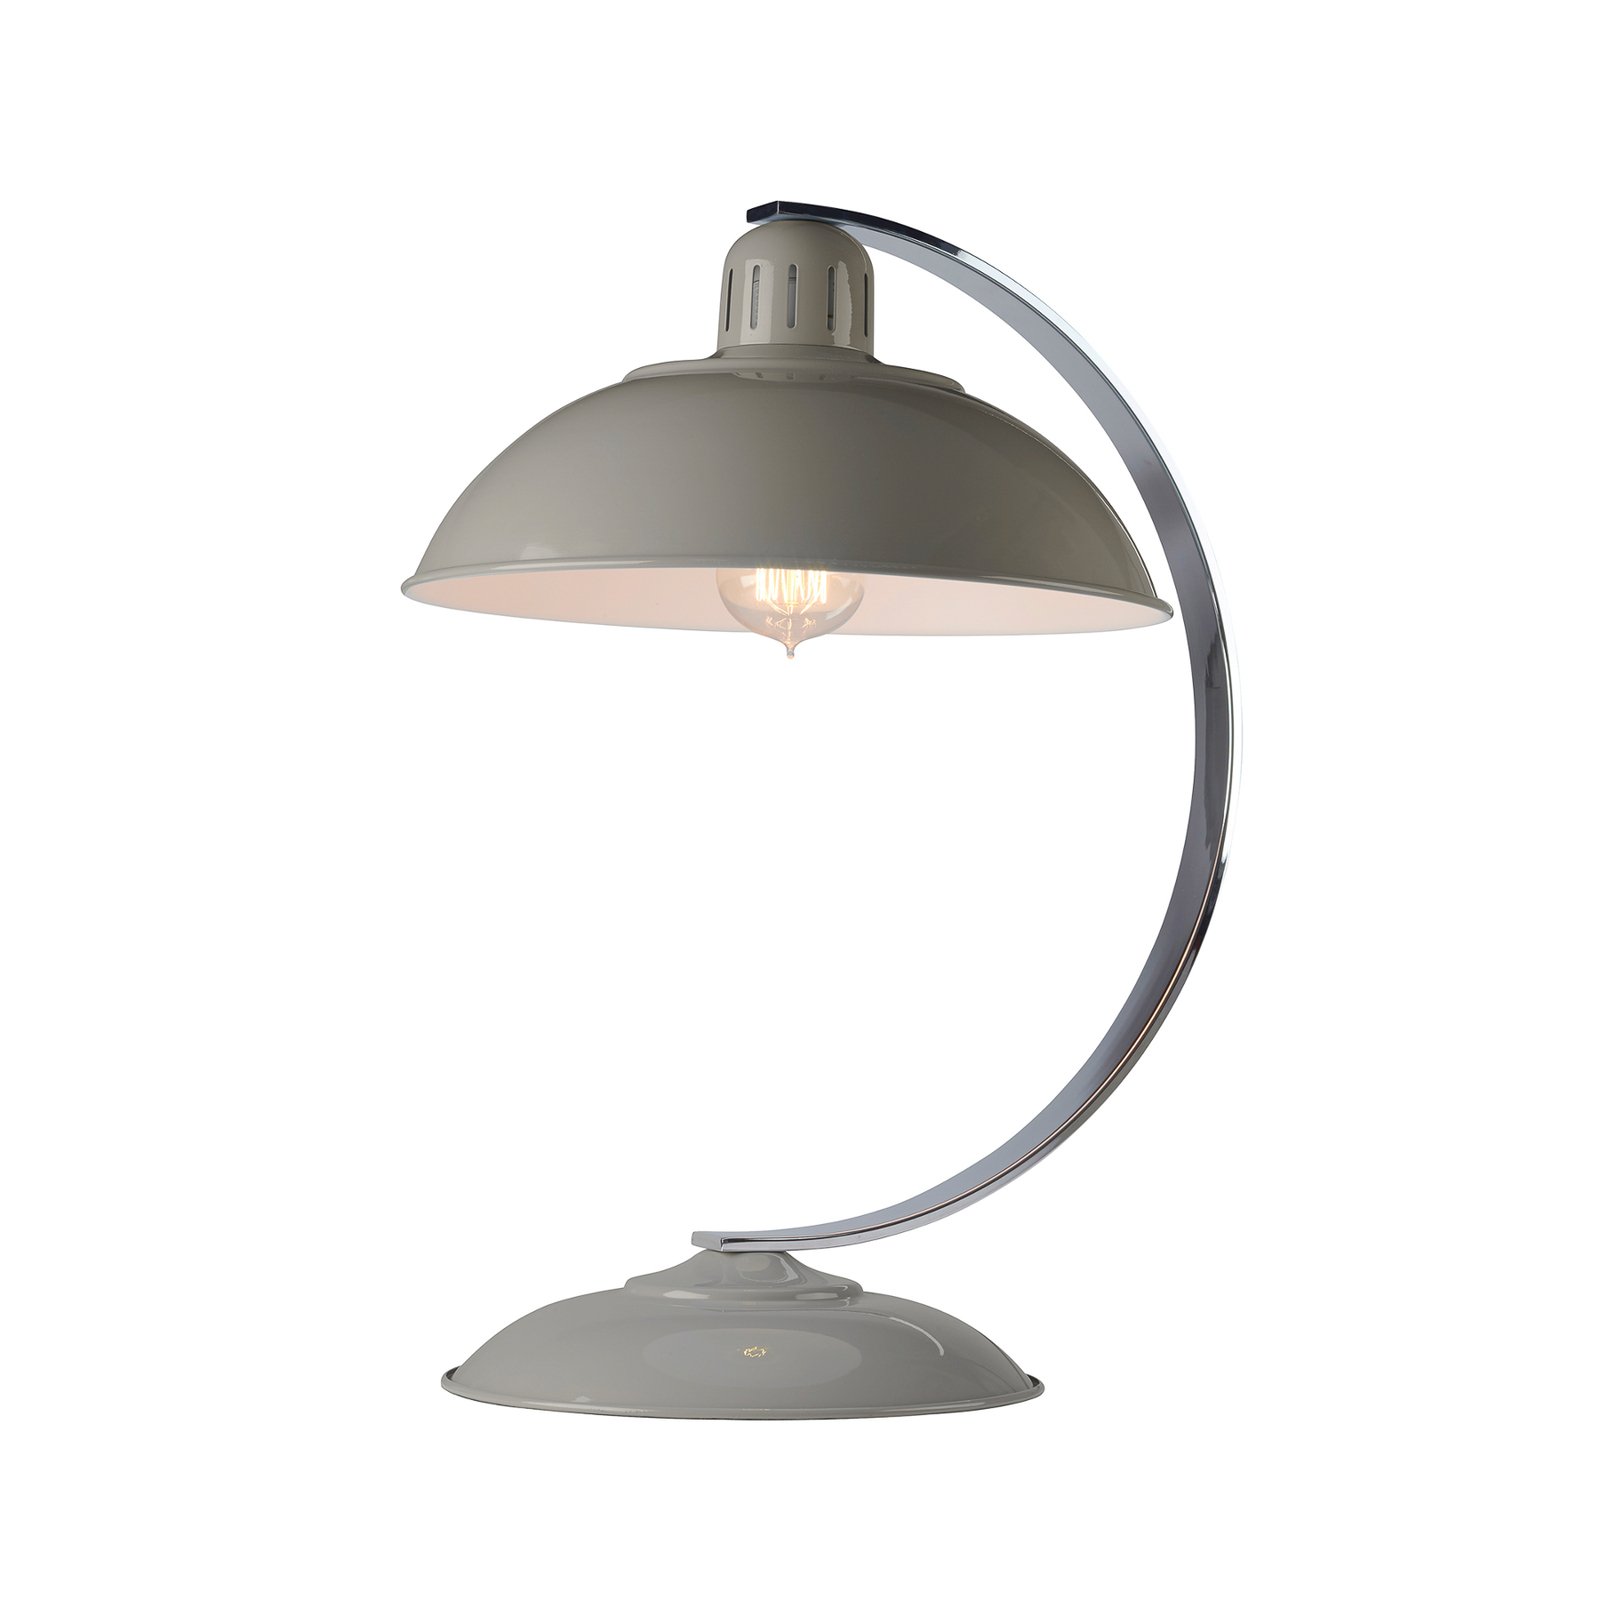 Franklin bordlampe i retro-stil, grå